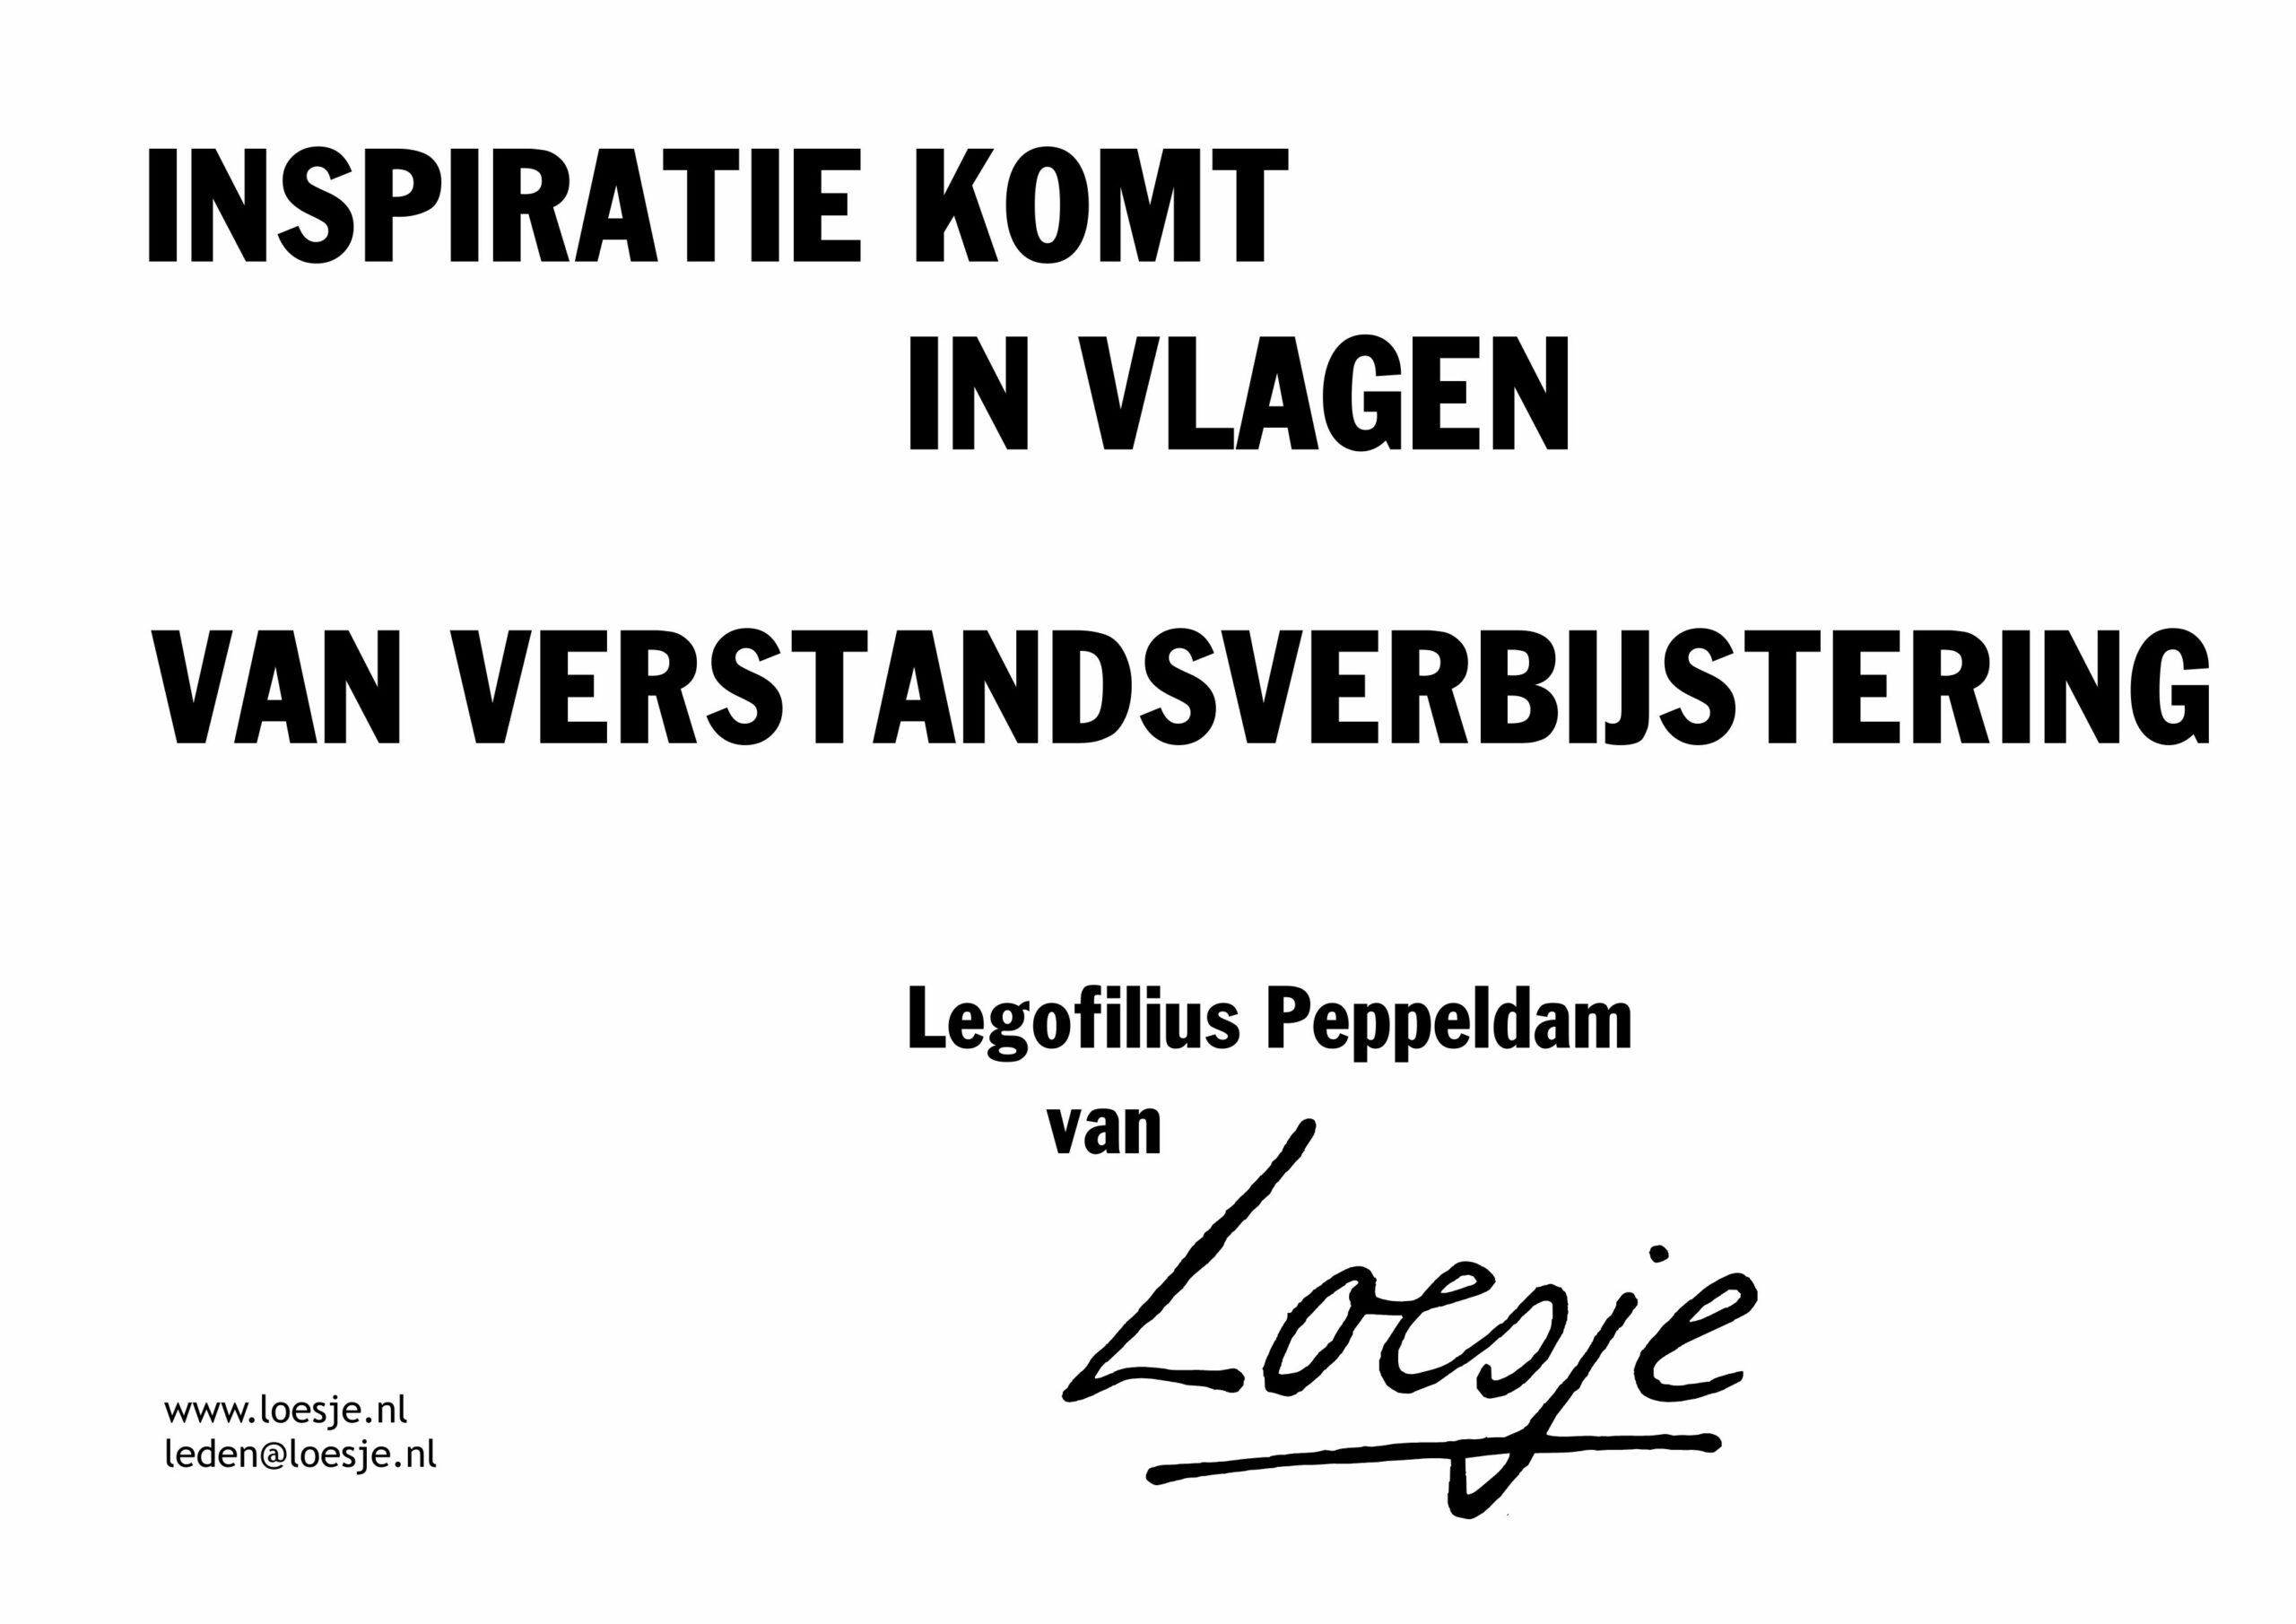 Inspiratie komt in vlagen van verstandsverbijstering – Legofilius Peppeldam van Loesje